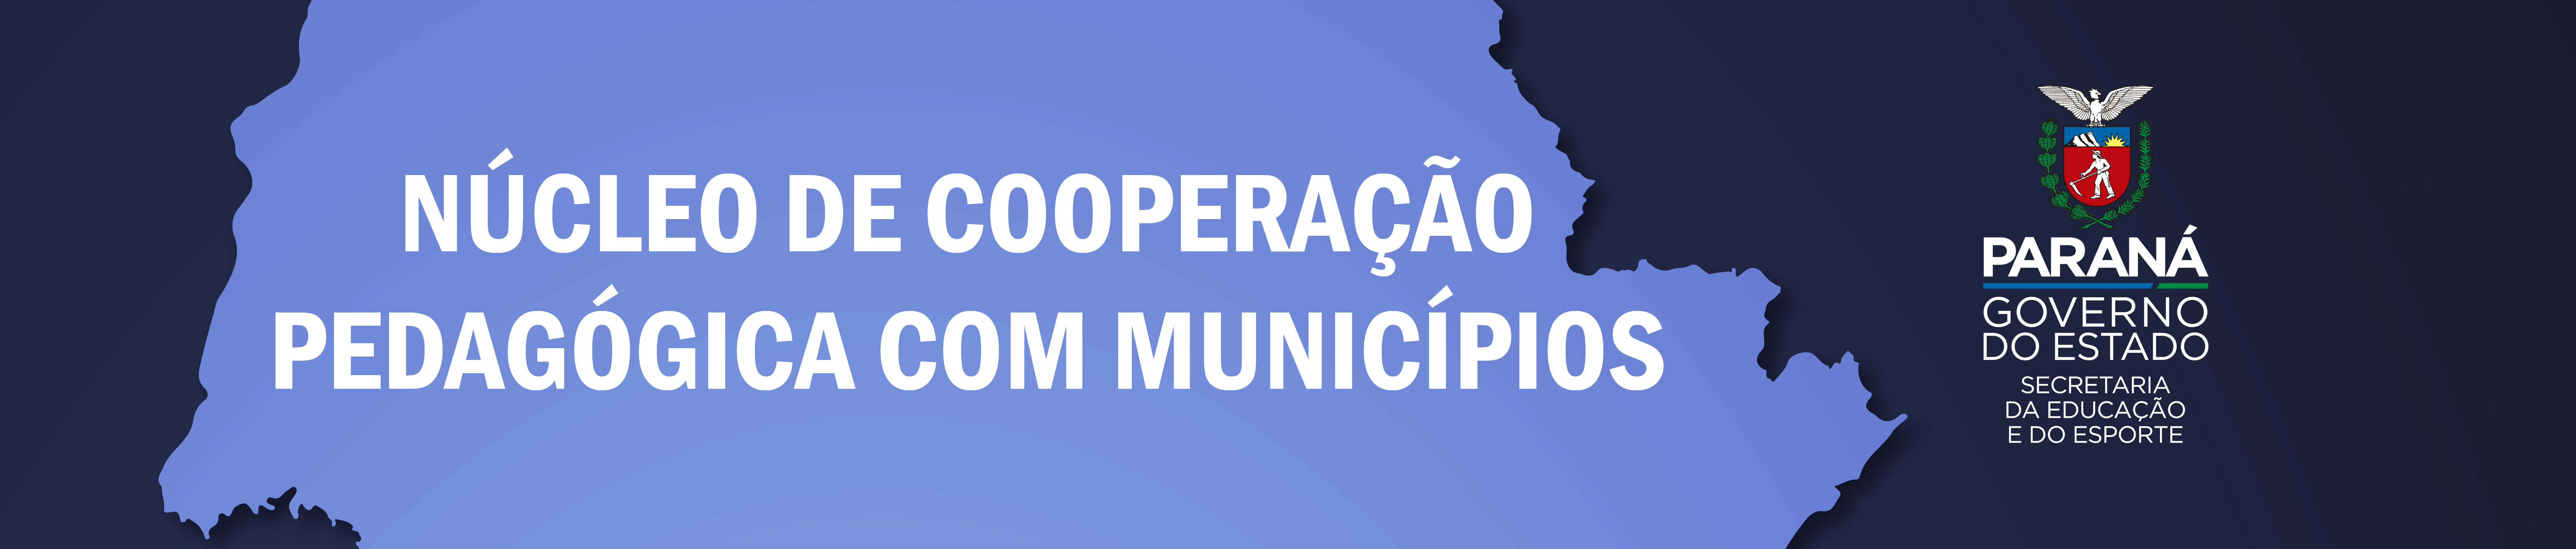 banner núcleo de cooperação pedagógica com os municípios